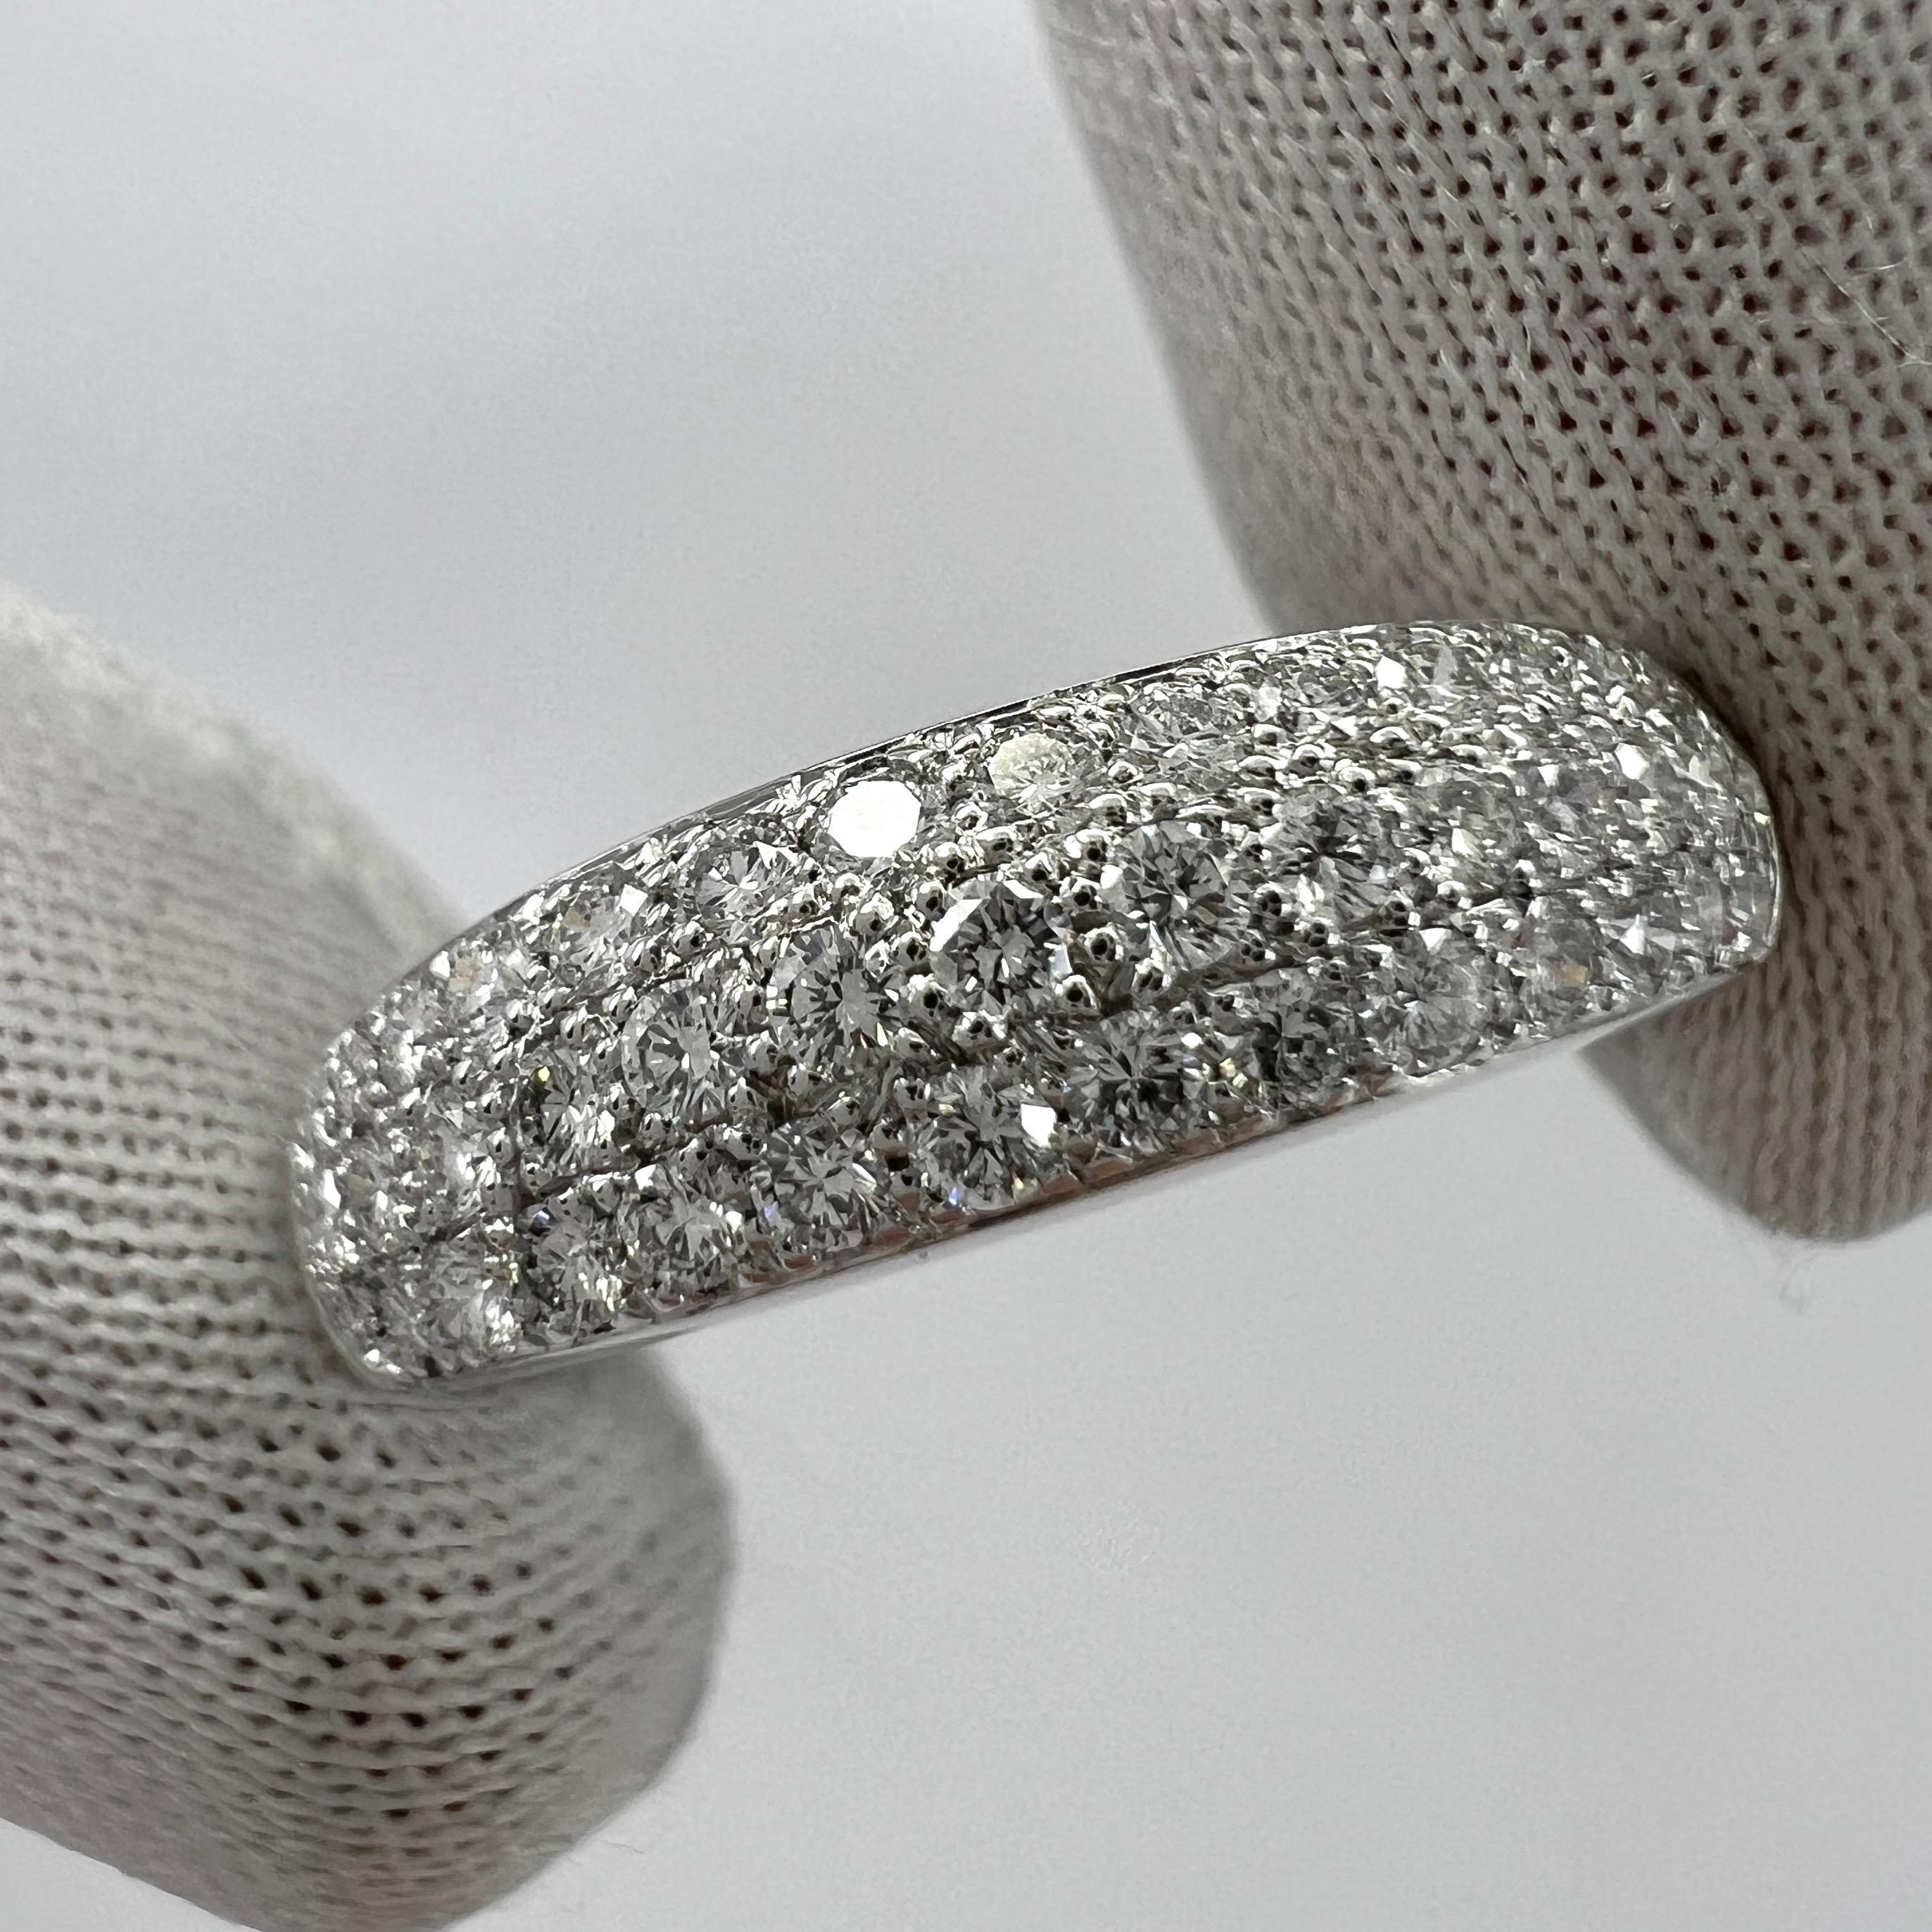 Seltener Vintage Van Cleef & Arpels Pavé Diamond 18k White Gold Band Ring.

Dieser wunderschön gearbeitete Ring von VCA zeichnet sich durch ein geschwungenes Kuppeldesign mit drei Reihen wunderschön gefasster Pavé-Diamanten aus, die sich bis zur